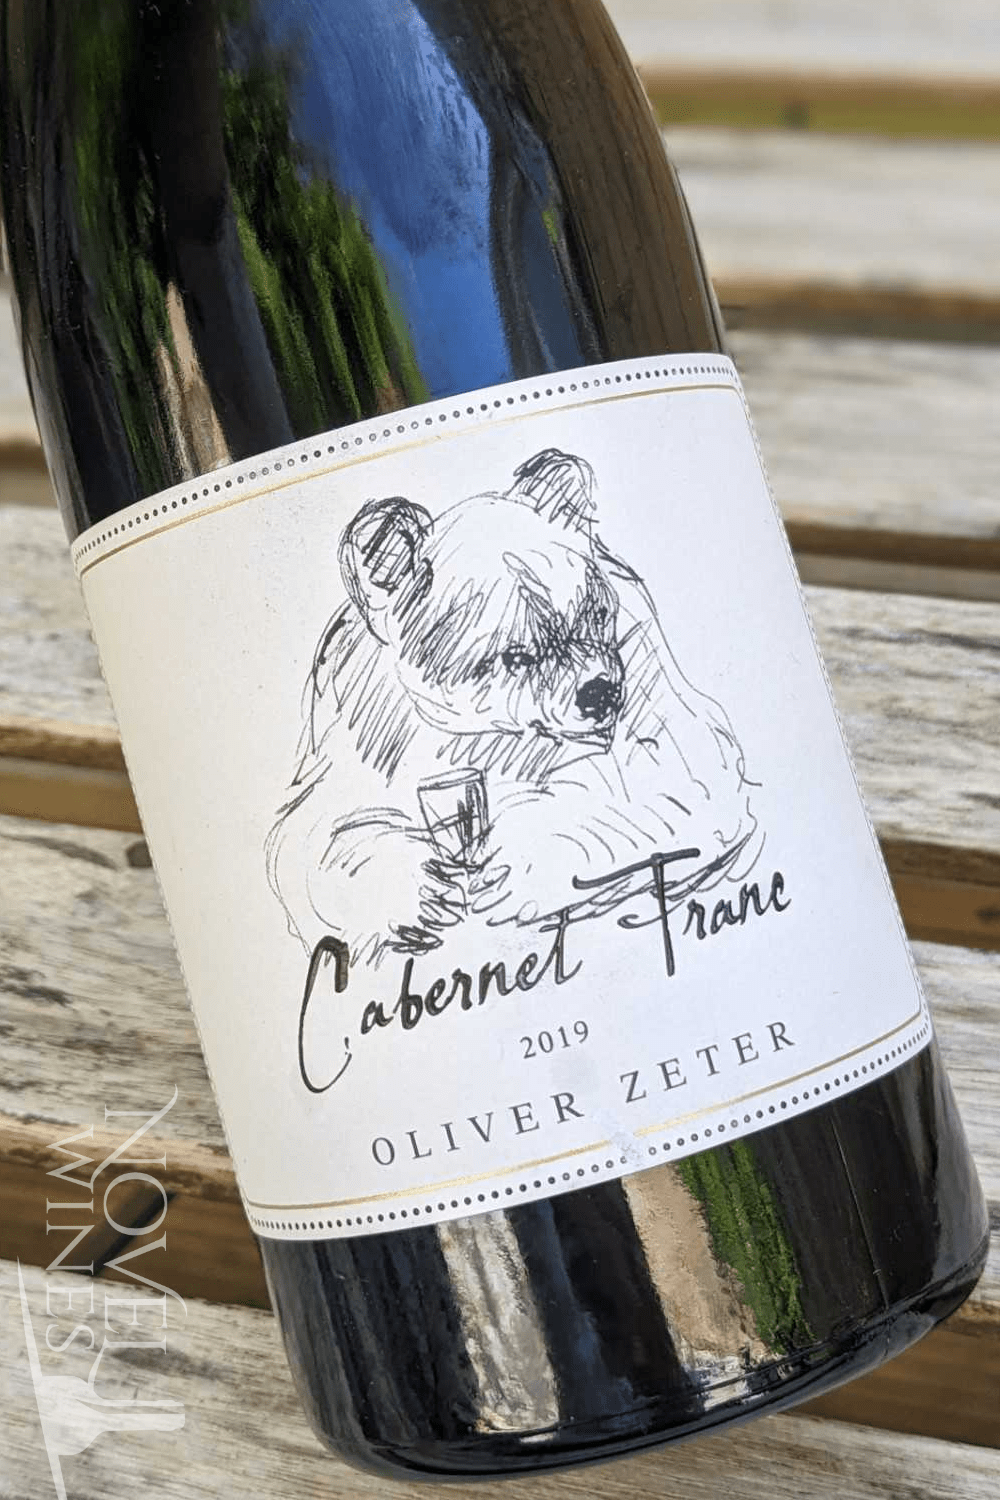 Oliver Zeter Red Wine Oliver Zeter Cabernet Franc 2019, Germany